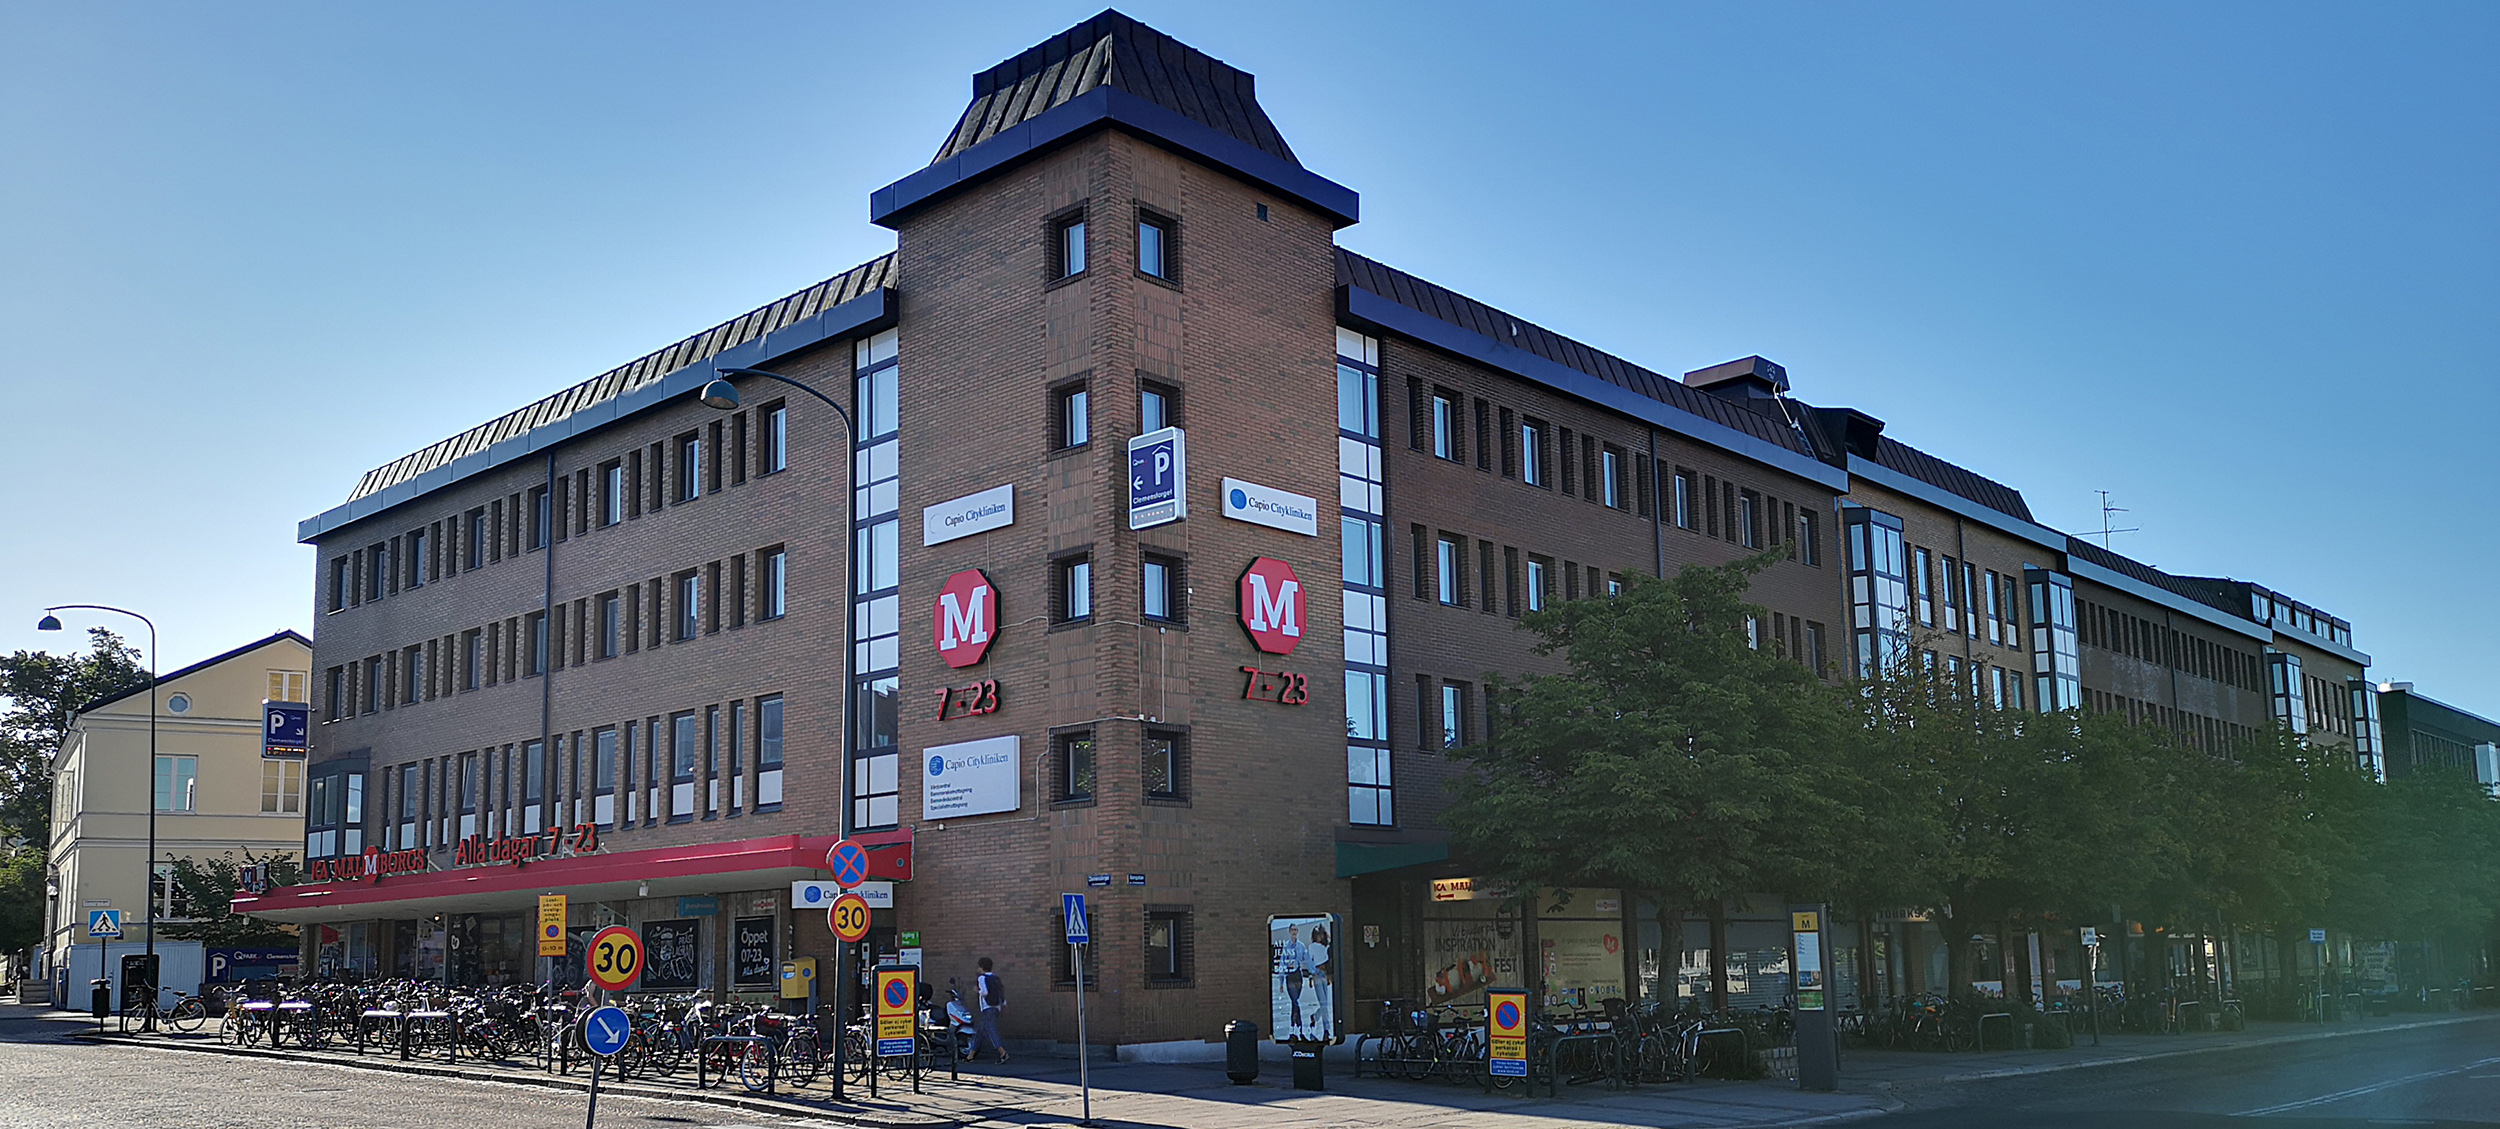 Är Malmborgshuset i Lund Sveriges fulaste byggnad genom tiderna?